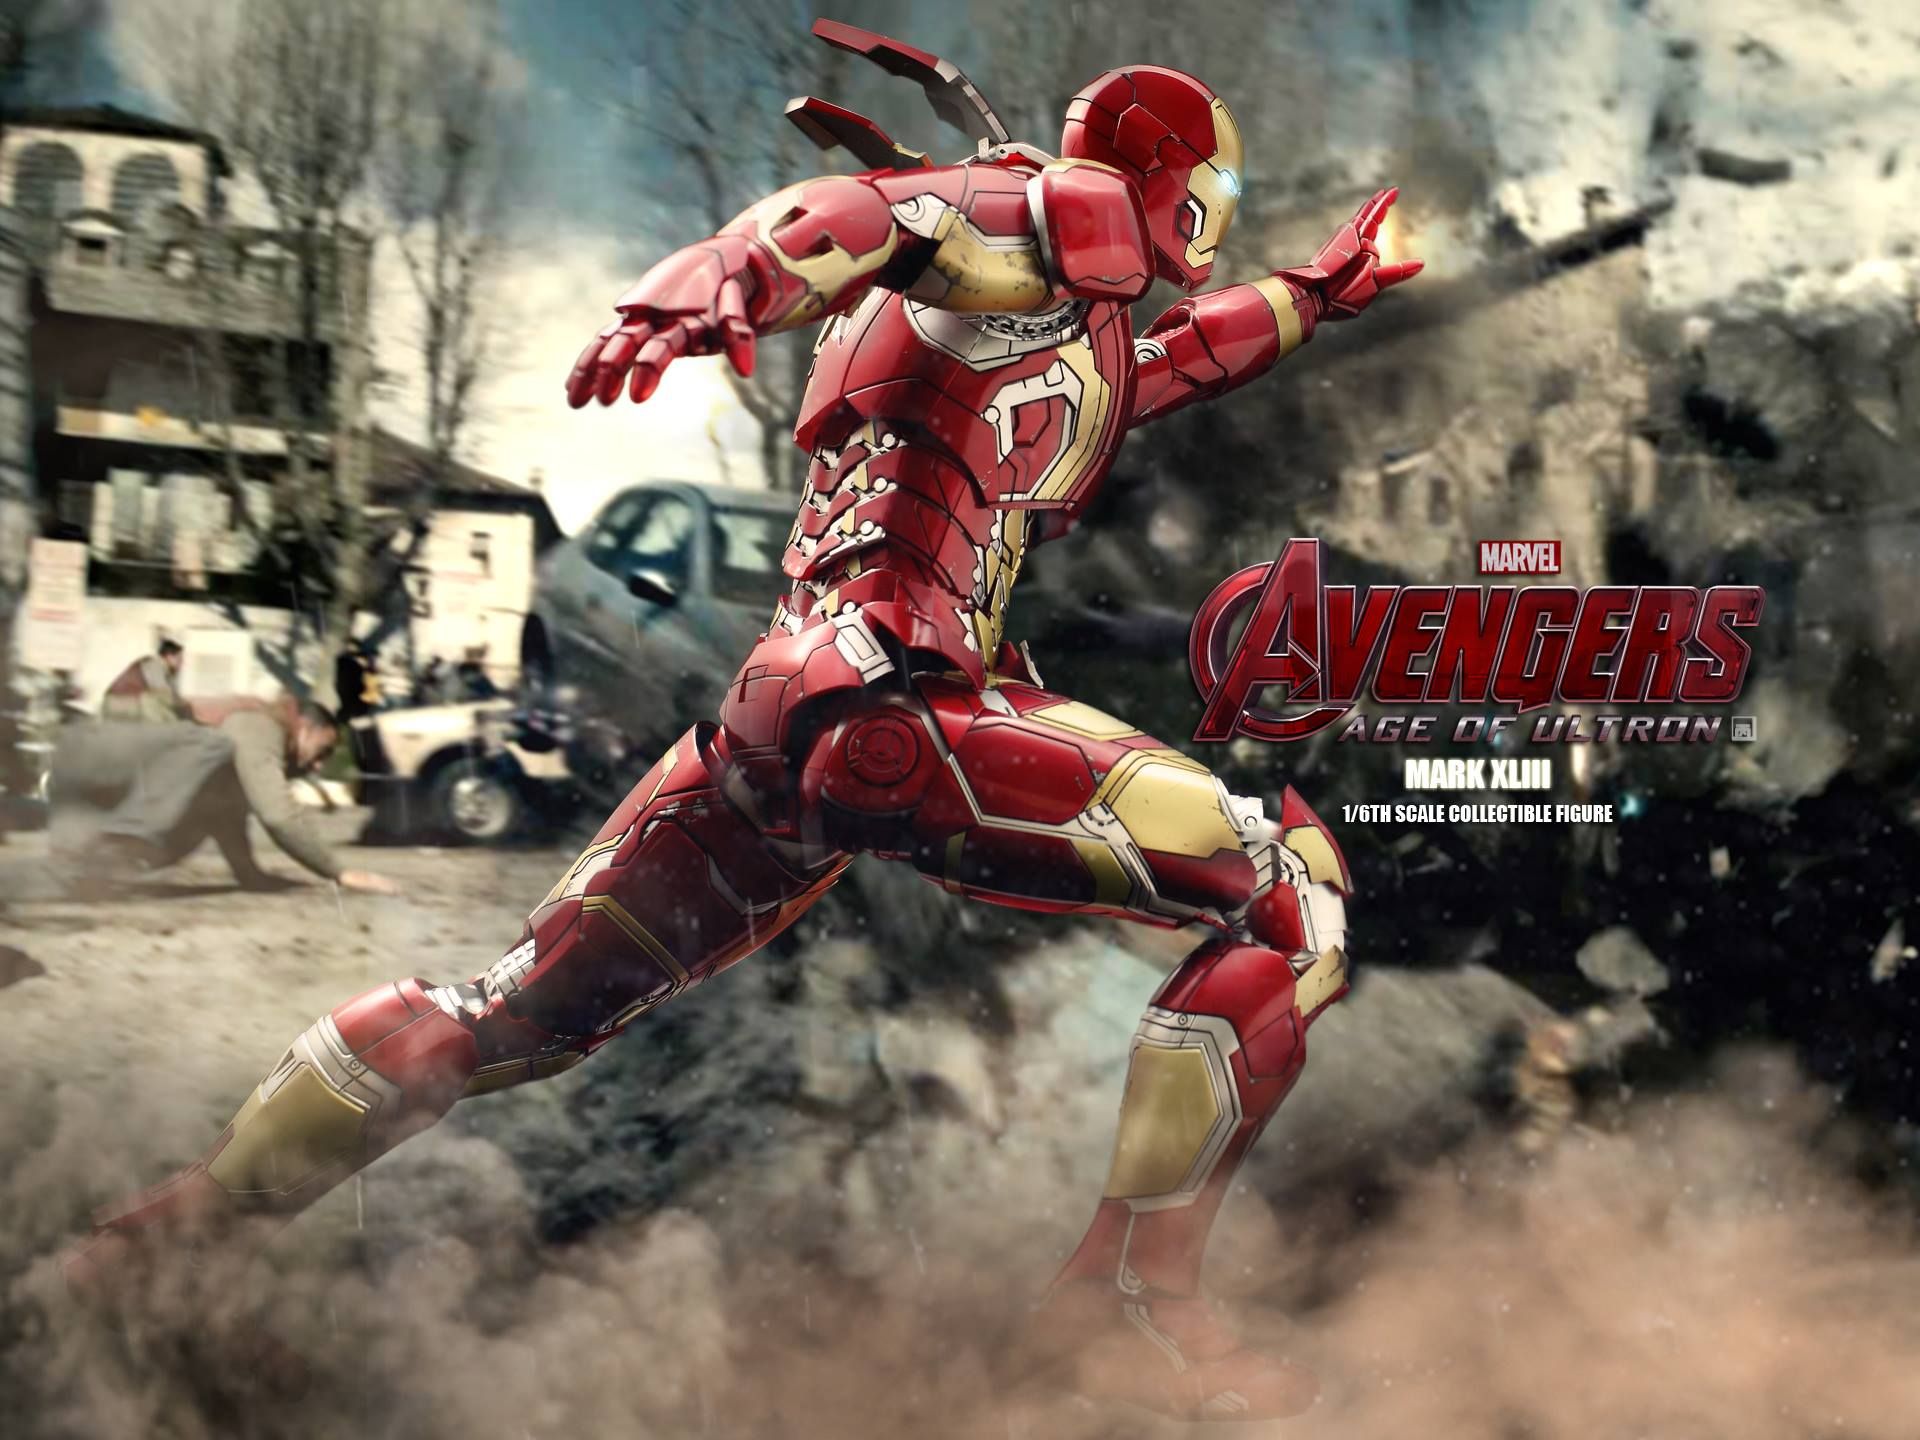 Avengers 2 Iron Man Mark XLIII Action Figure Photo 6